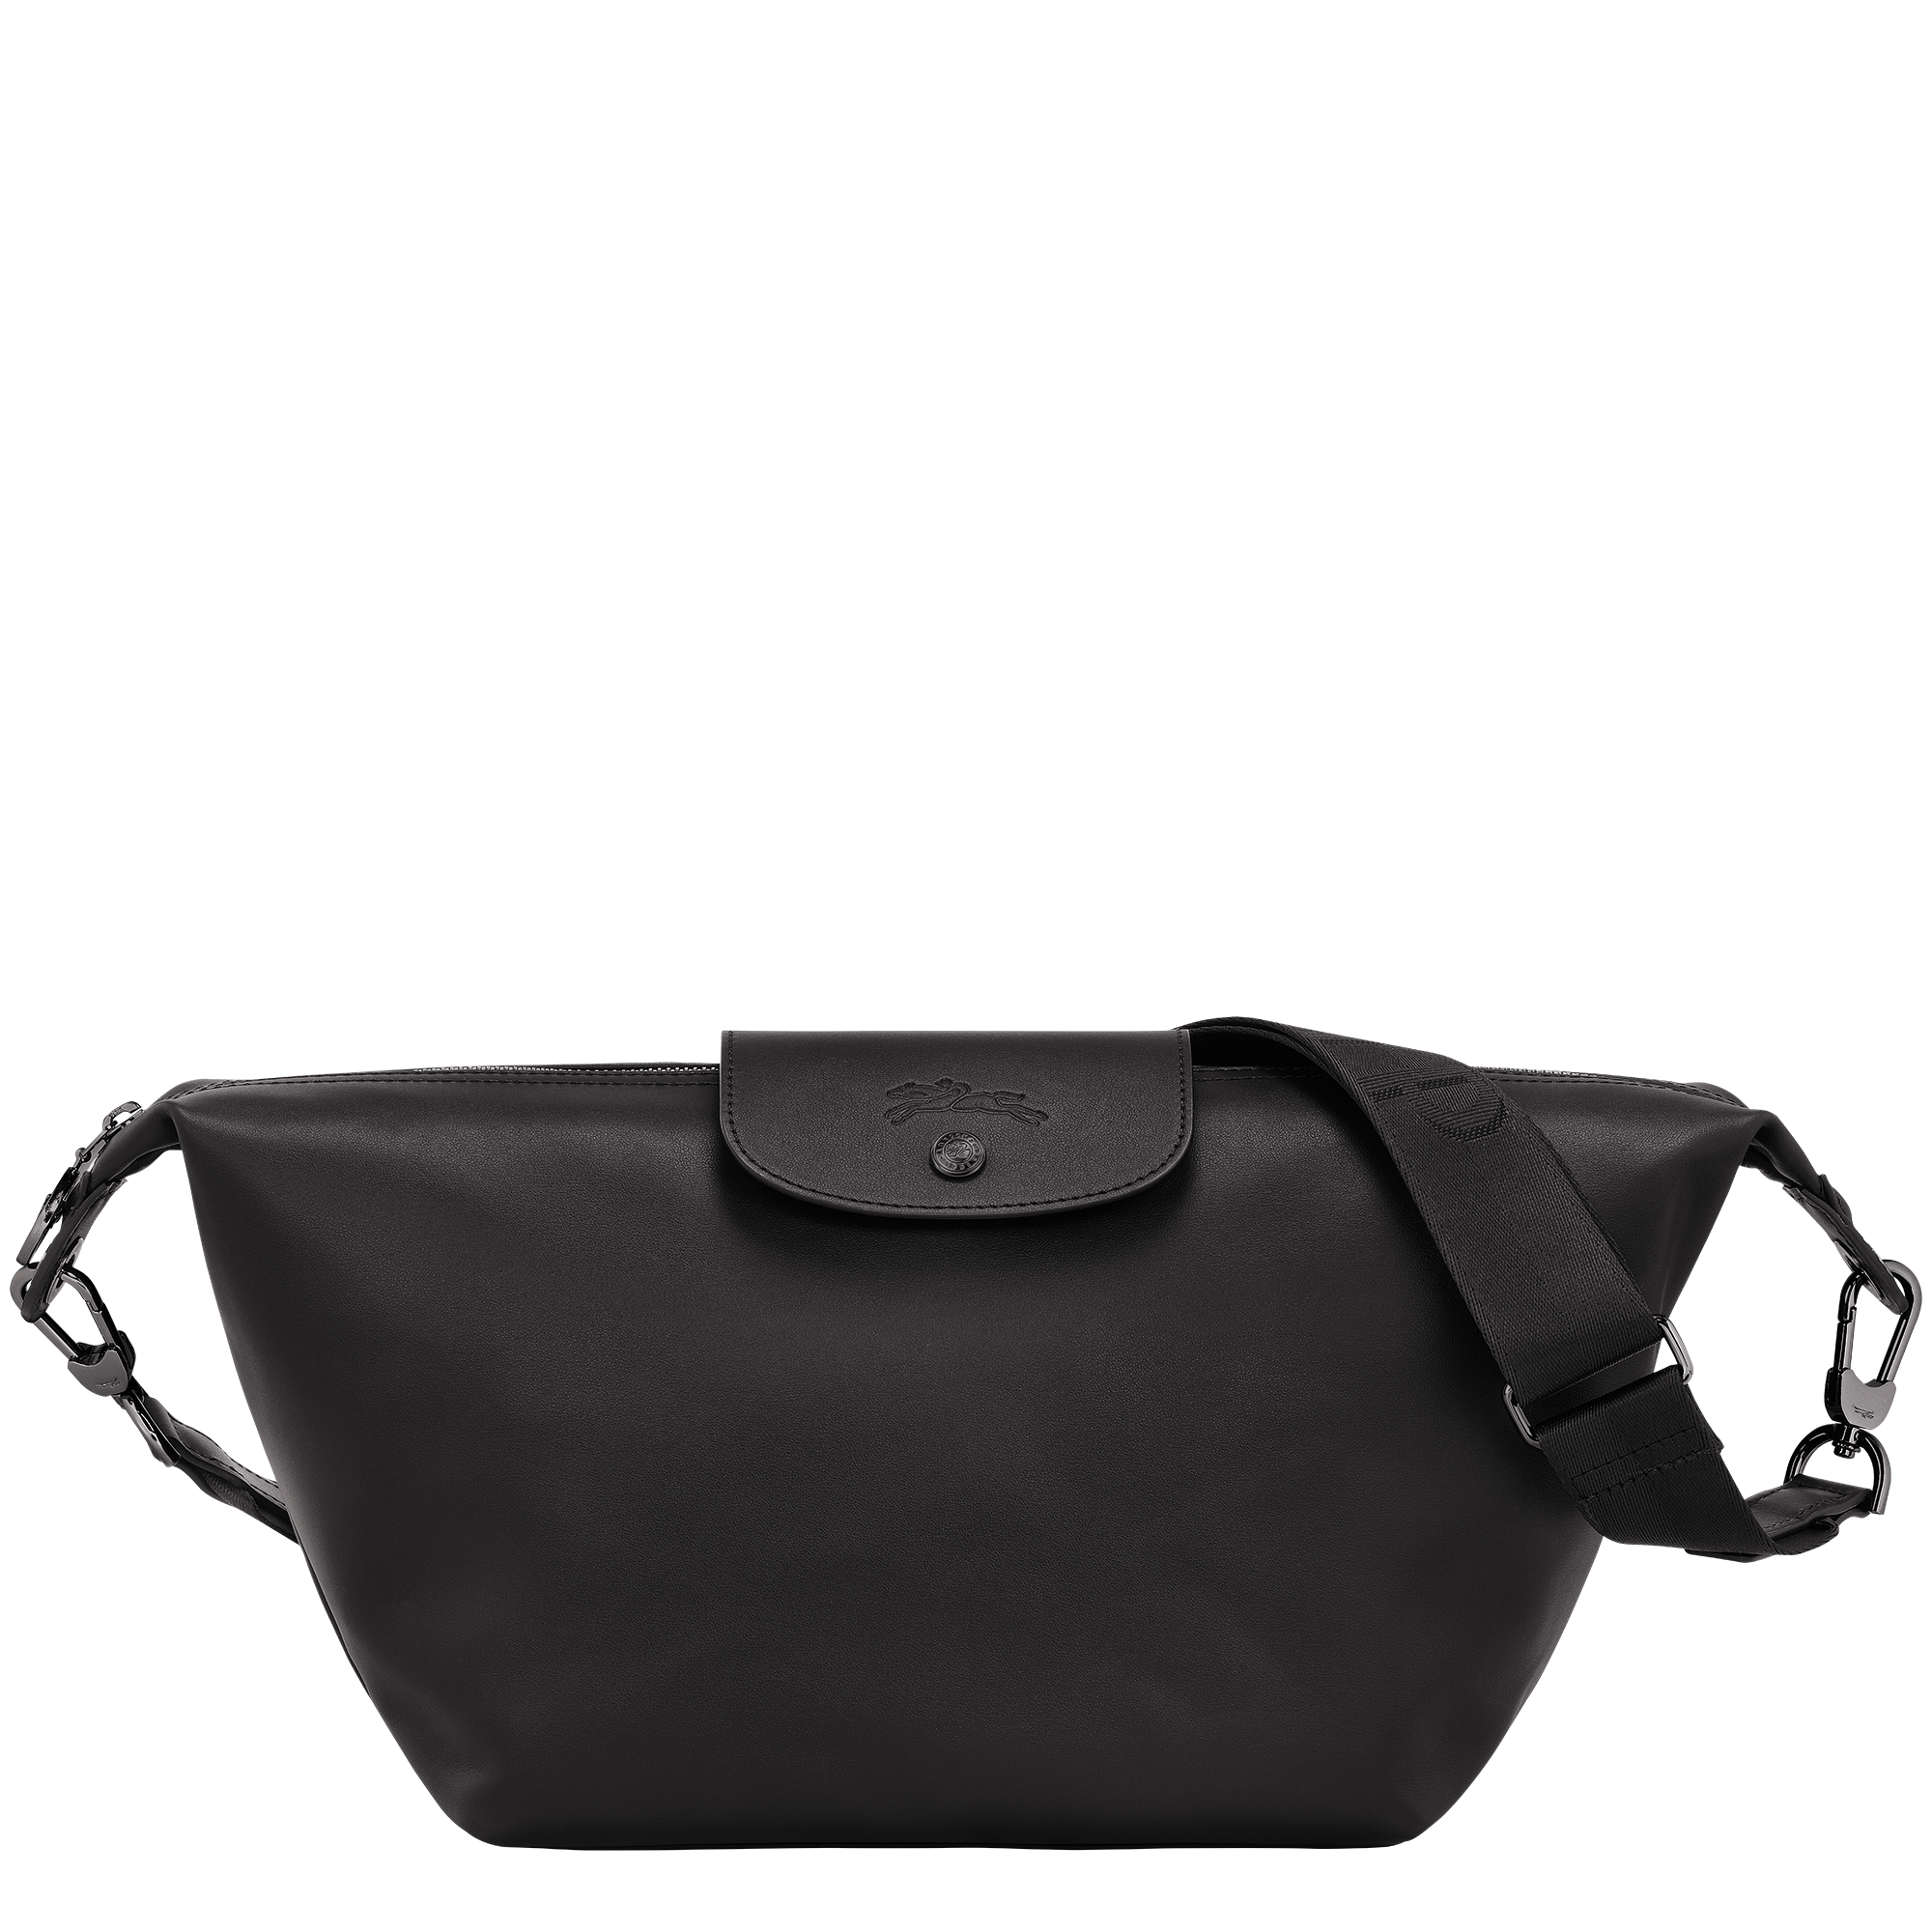 Le Pliage Xtra Hobo bag S, Black